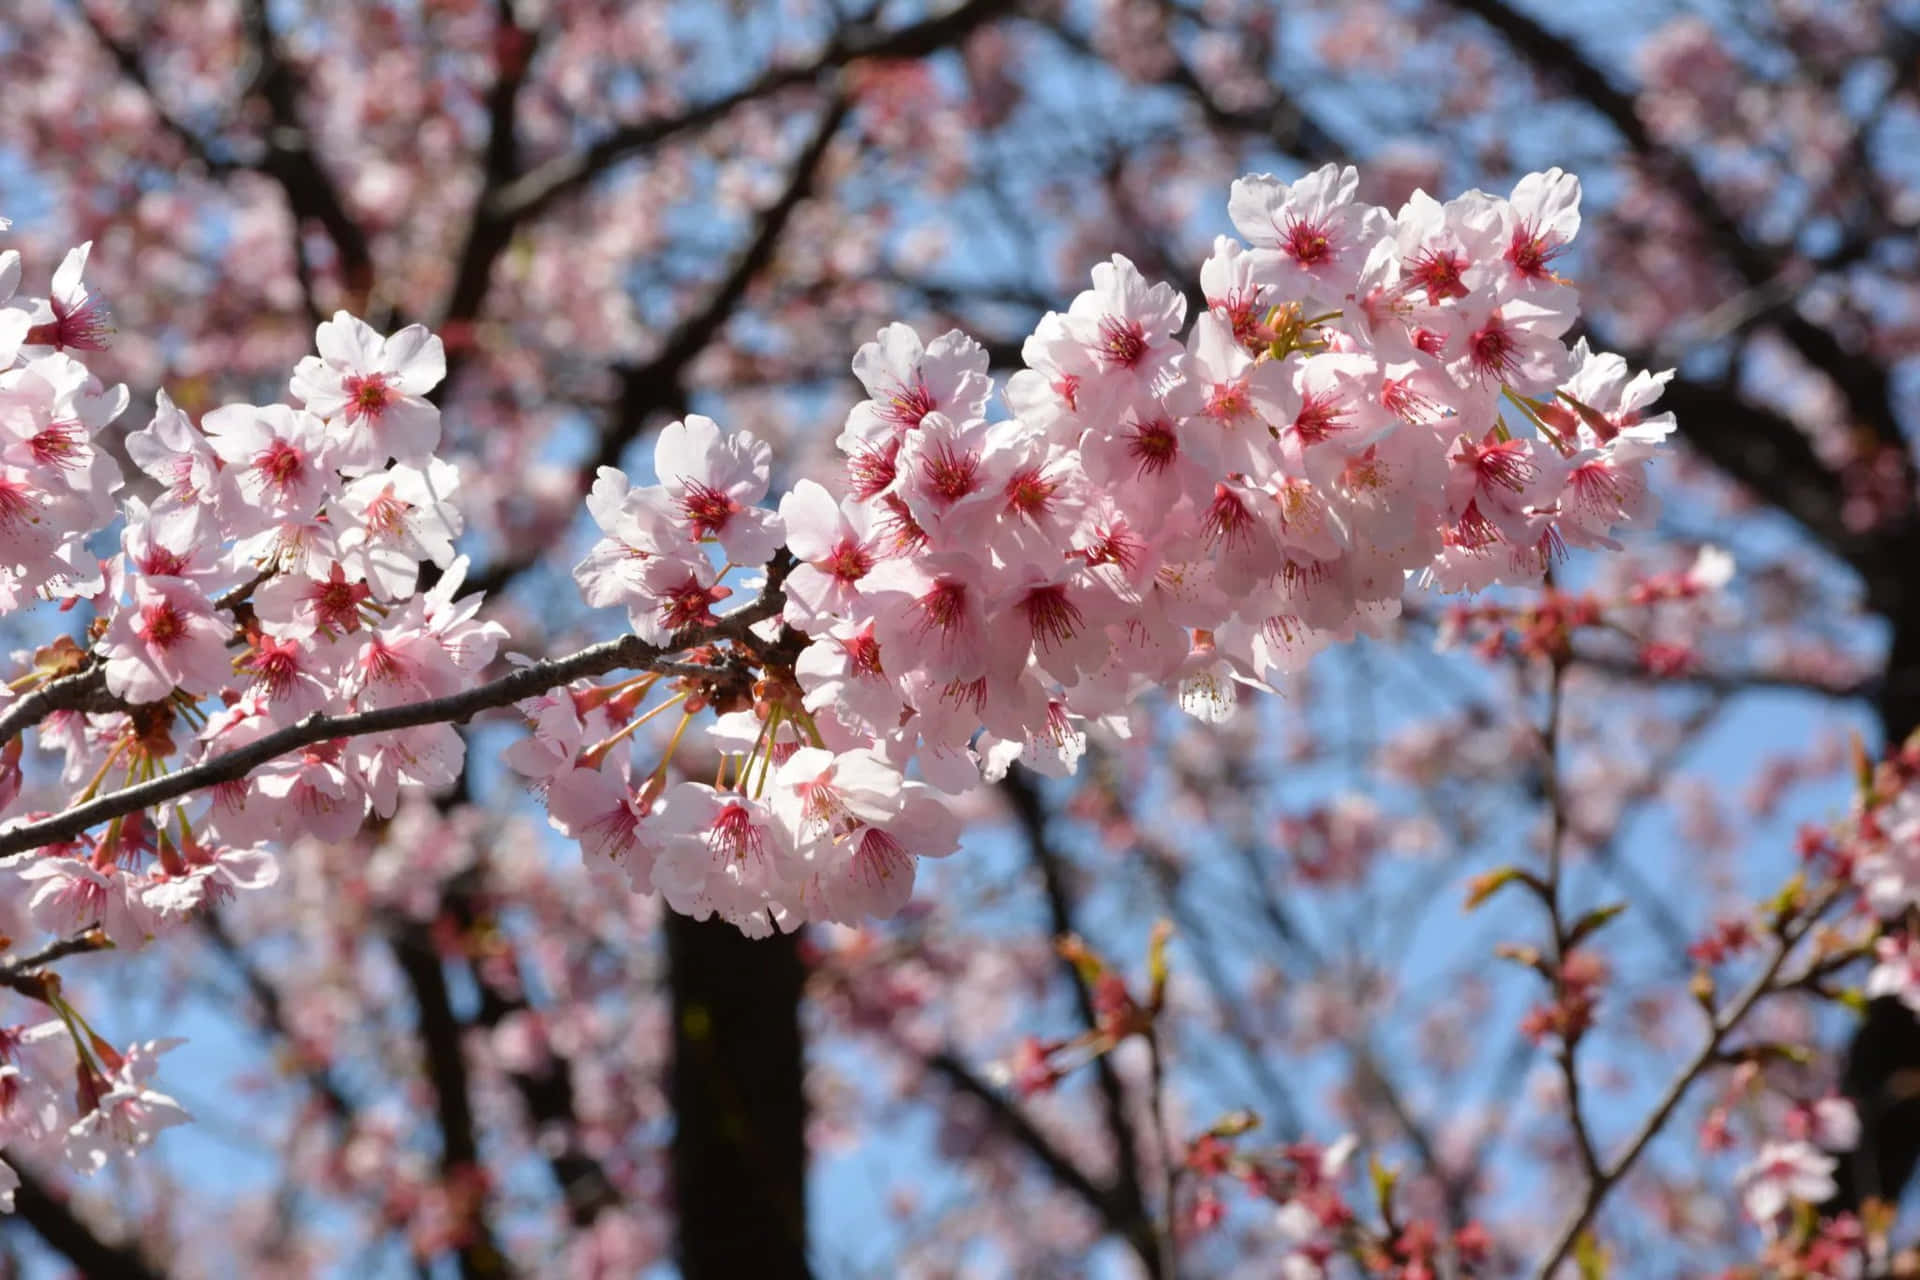 Enjoying A Perfectly Blooming Sakura Tree in Spring